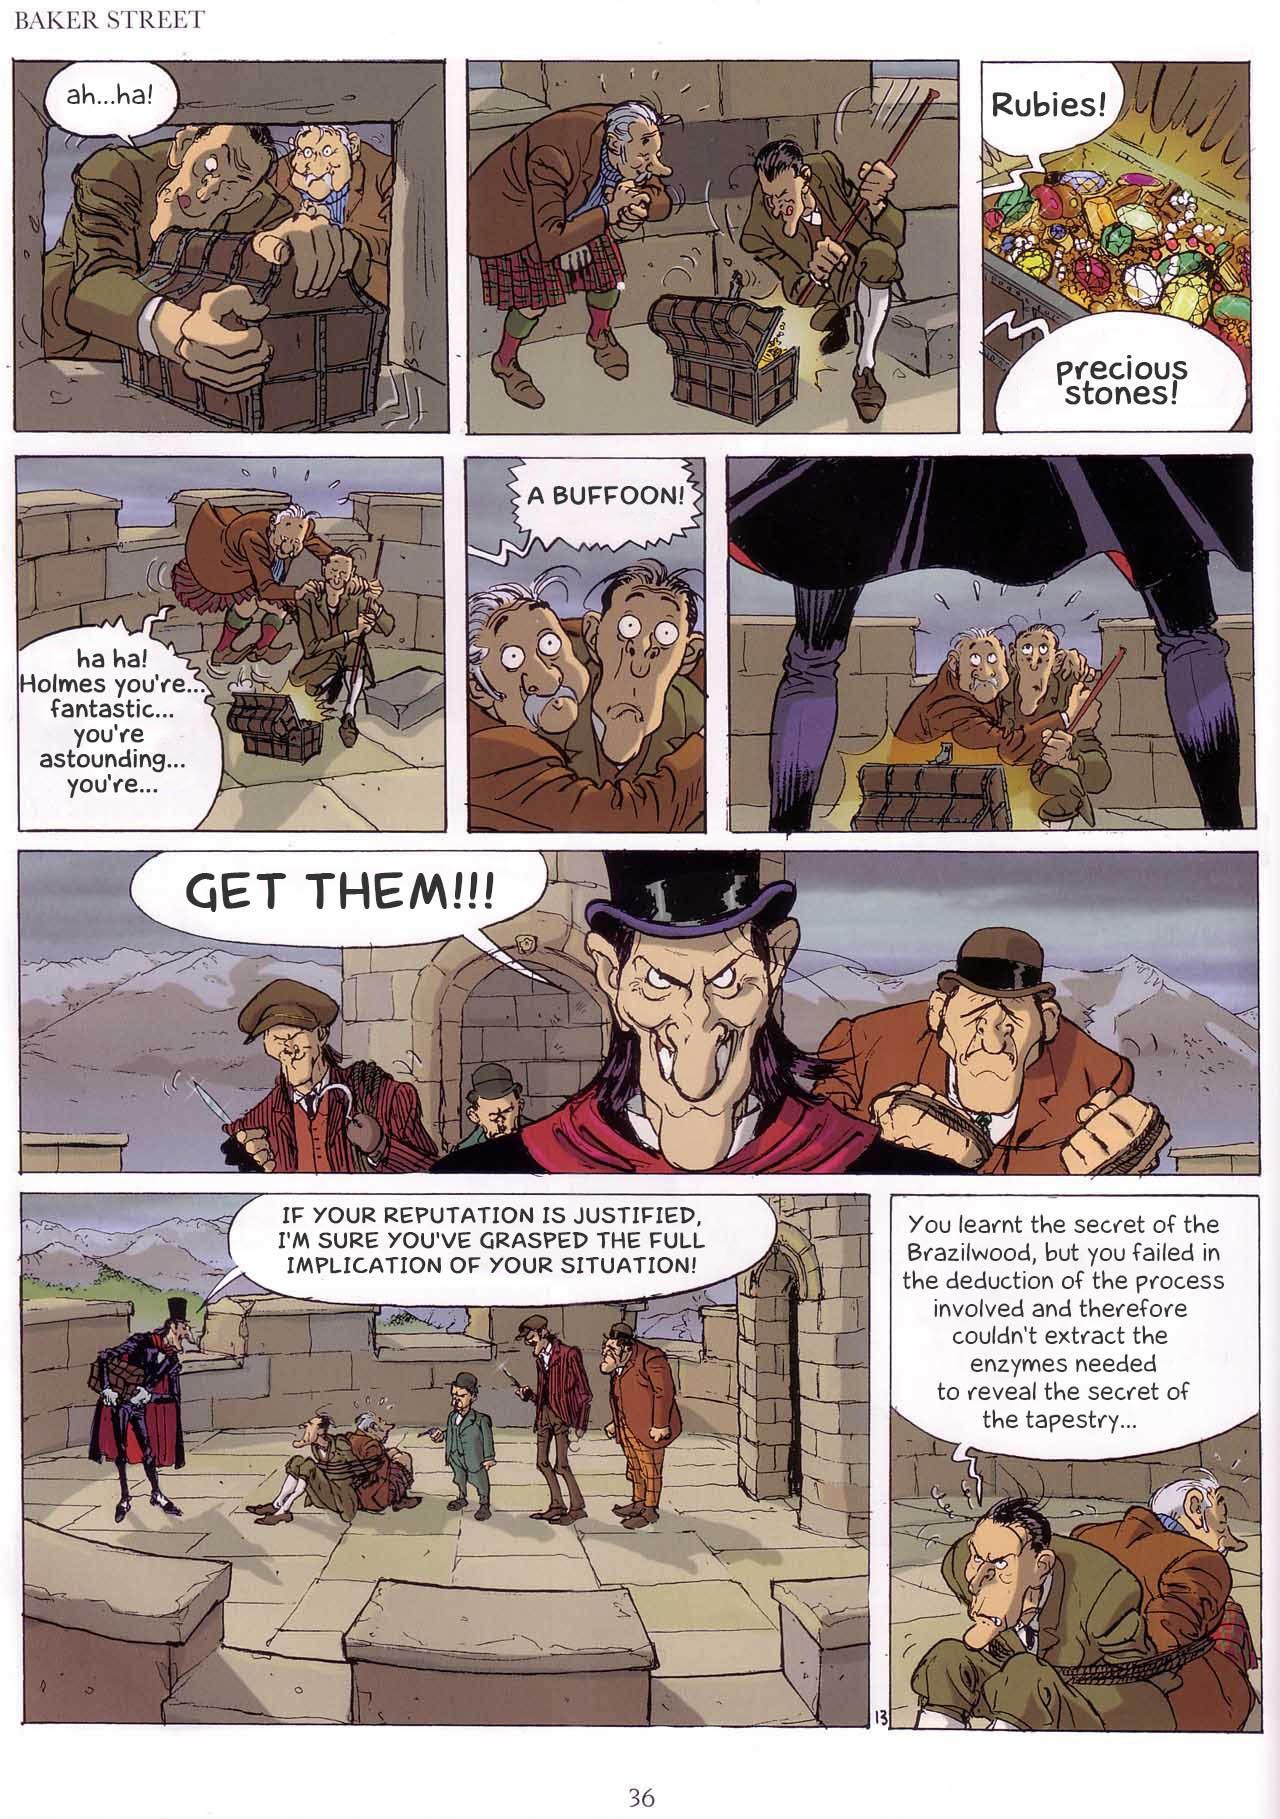 Read online Baker Street (2000) comic -  Issue #1 - 37